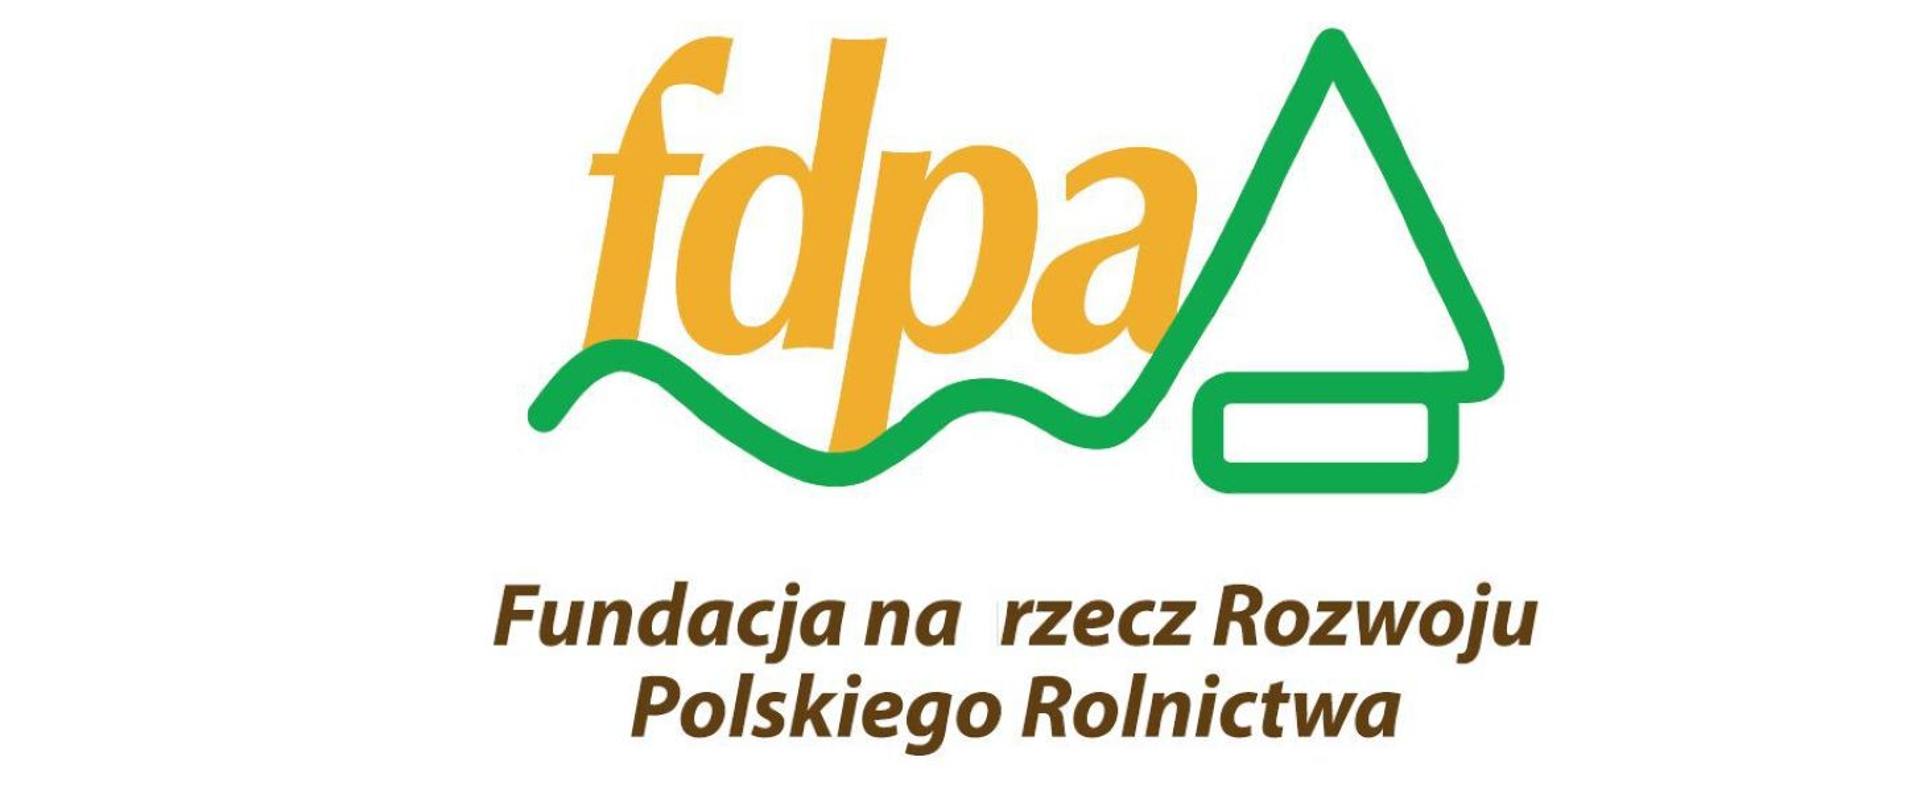 Grafika przedstawia pomarańczowe litery : f,d,p,a, pod nimi zieloną falowaną linię przechodzącą w trójkąt i prostokąt pod nim po prawej stronie; na dole zielony napis fundacja na rzecz rozwoju rolnictwa polskiego